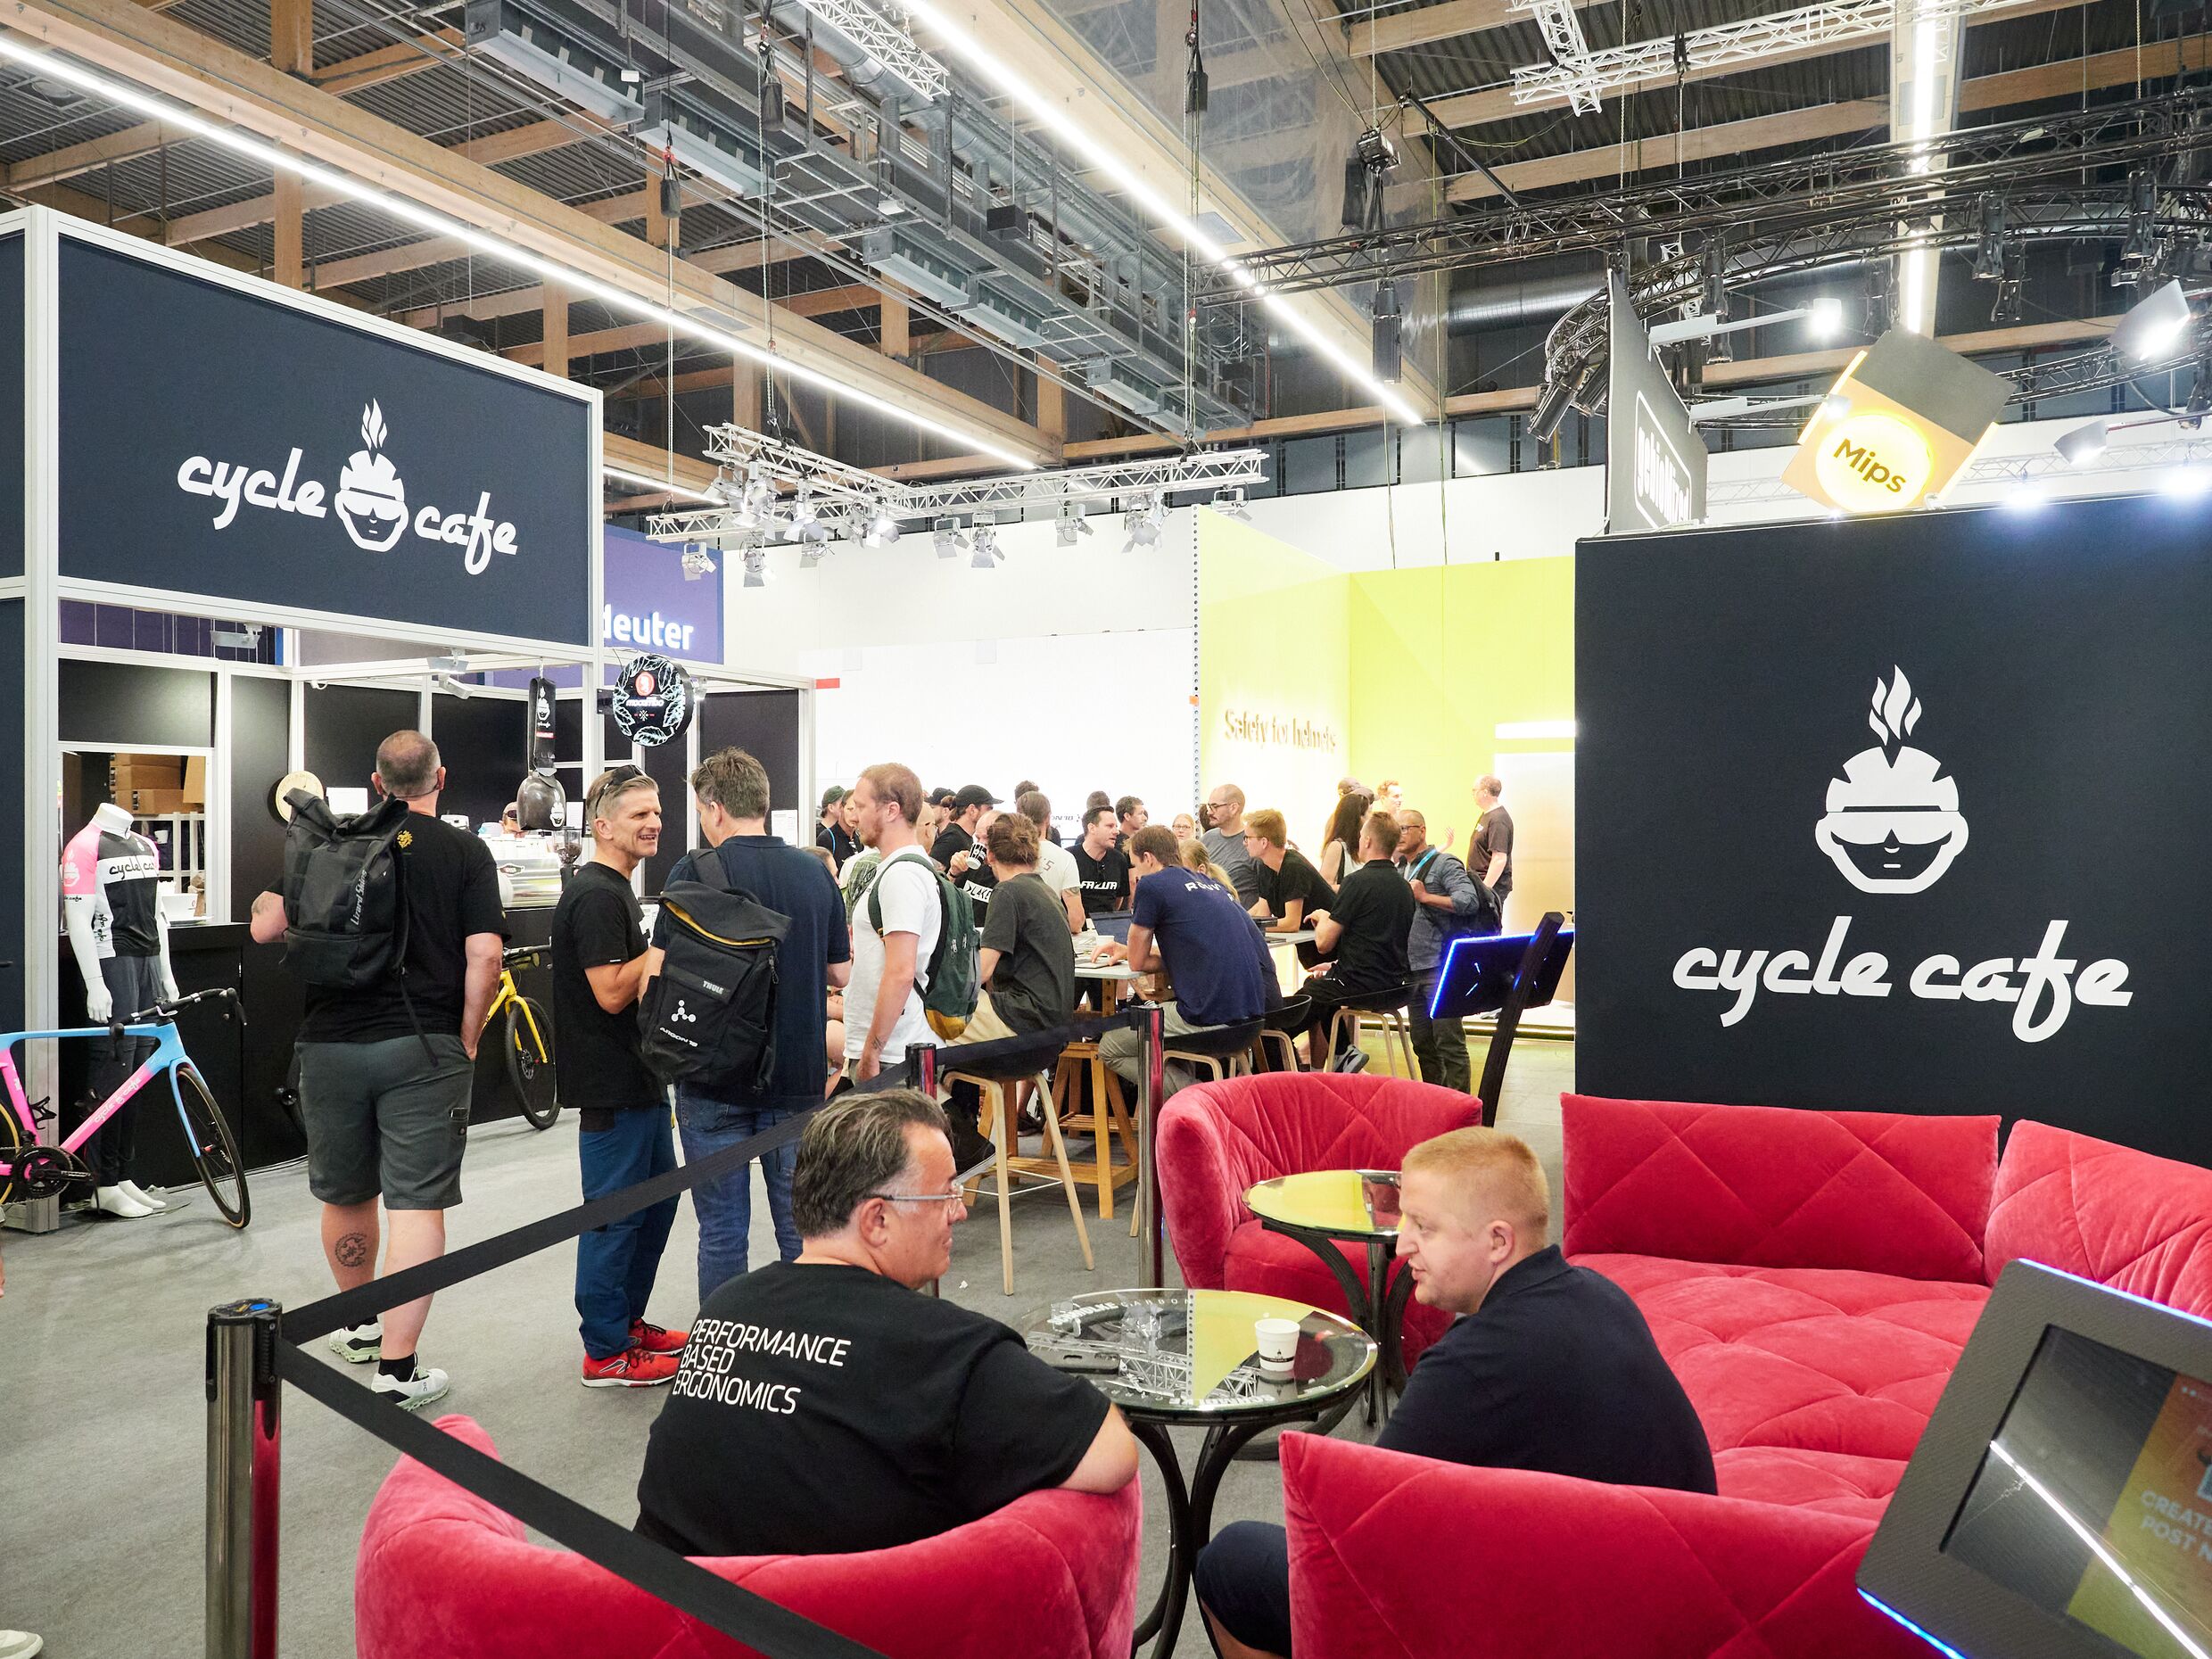 Cycle Cafe Halle 11.1: Eine schöne Atmosphäre und leckerer Kaffee